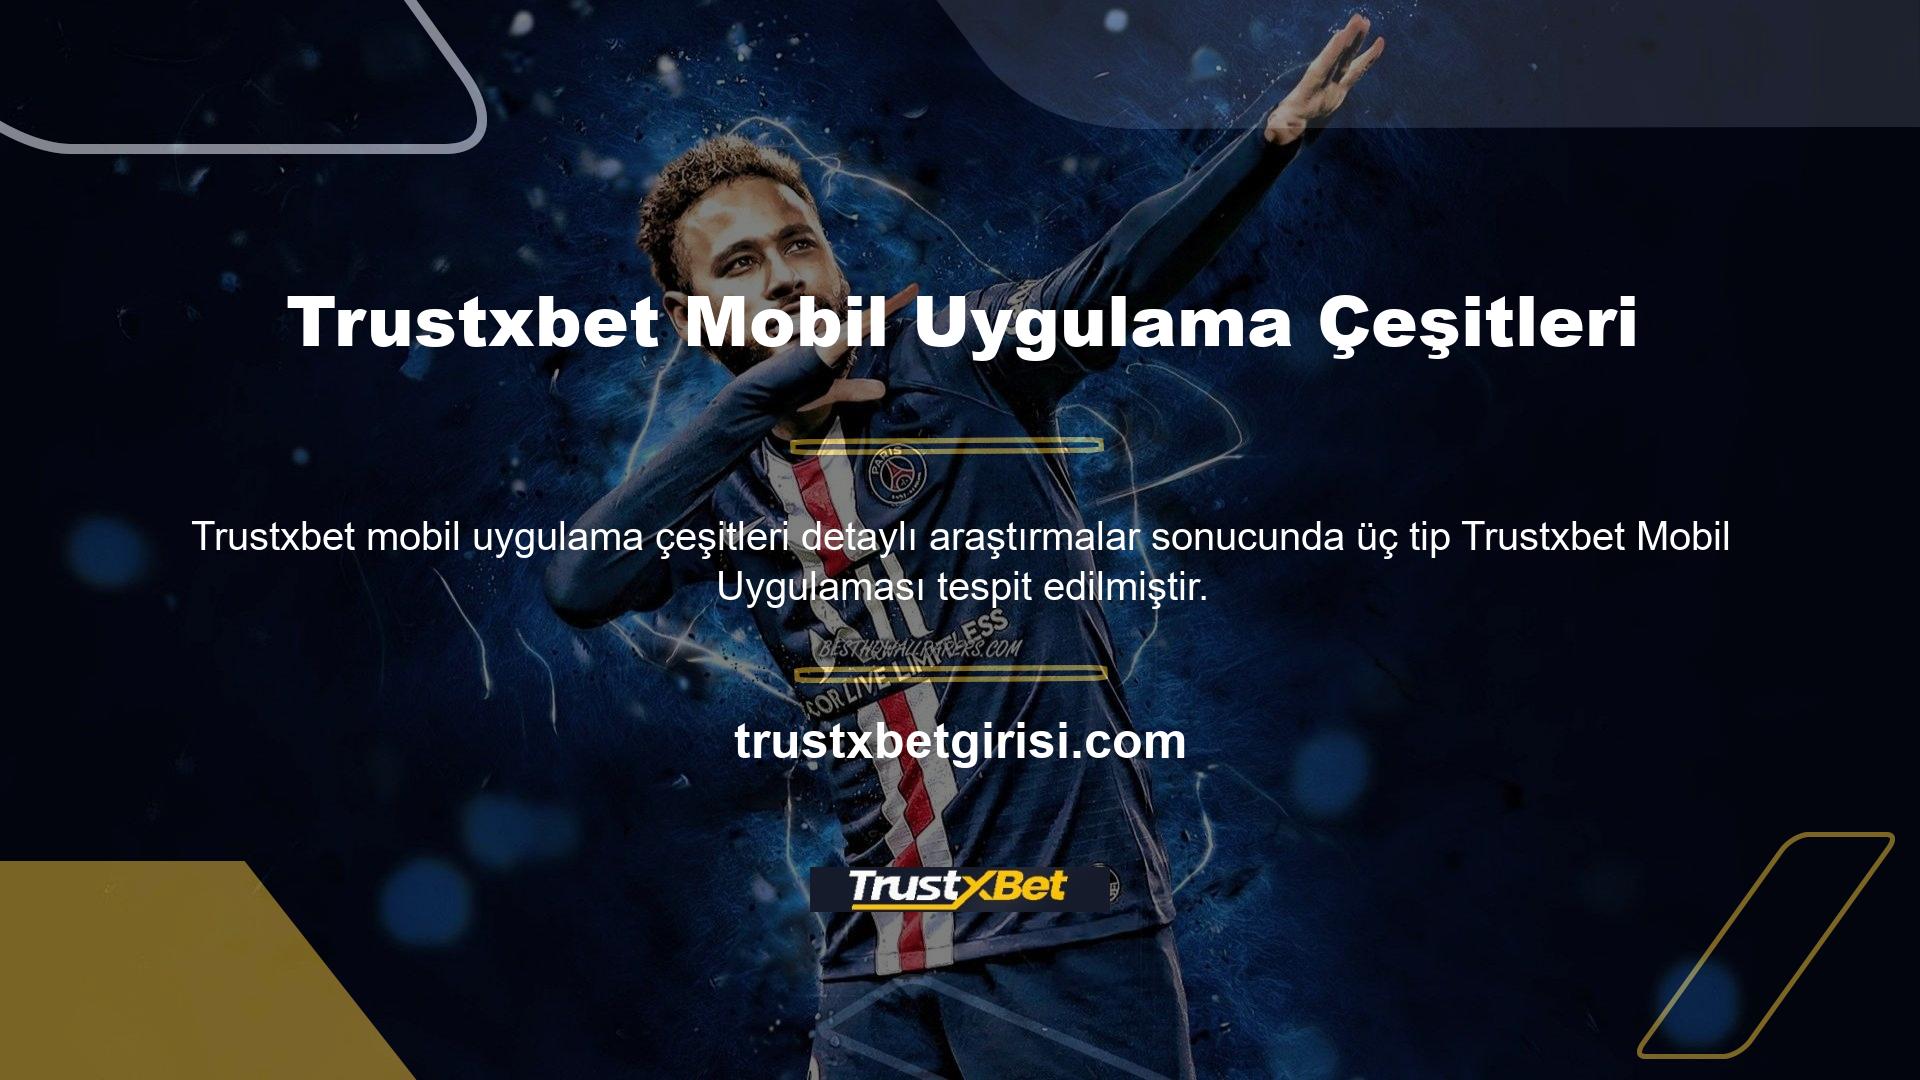 Trustxbet iPhone uygulaması, iOS cep telefonu sahibi olmak isteyen kullanıcıların ilgisini çekiyor